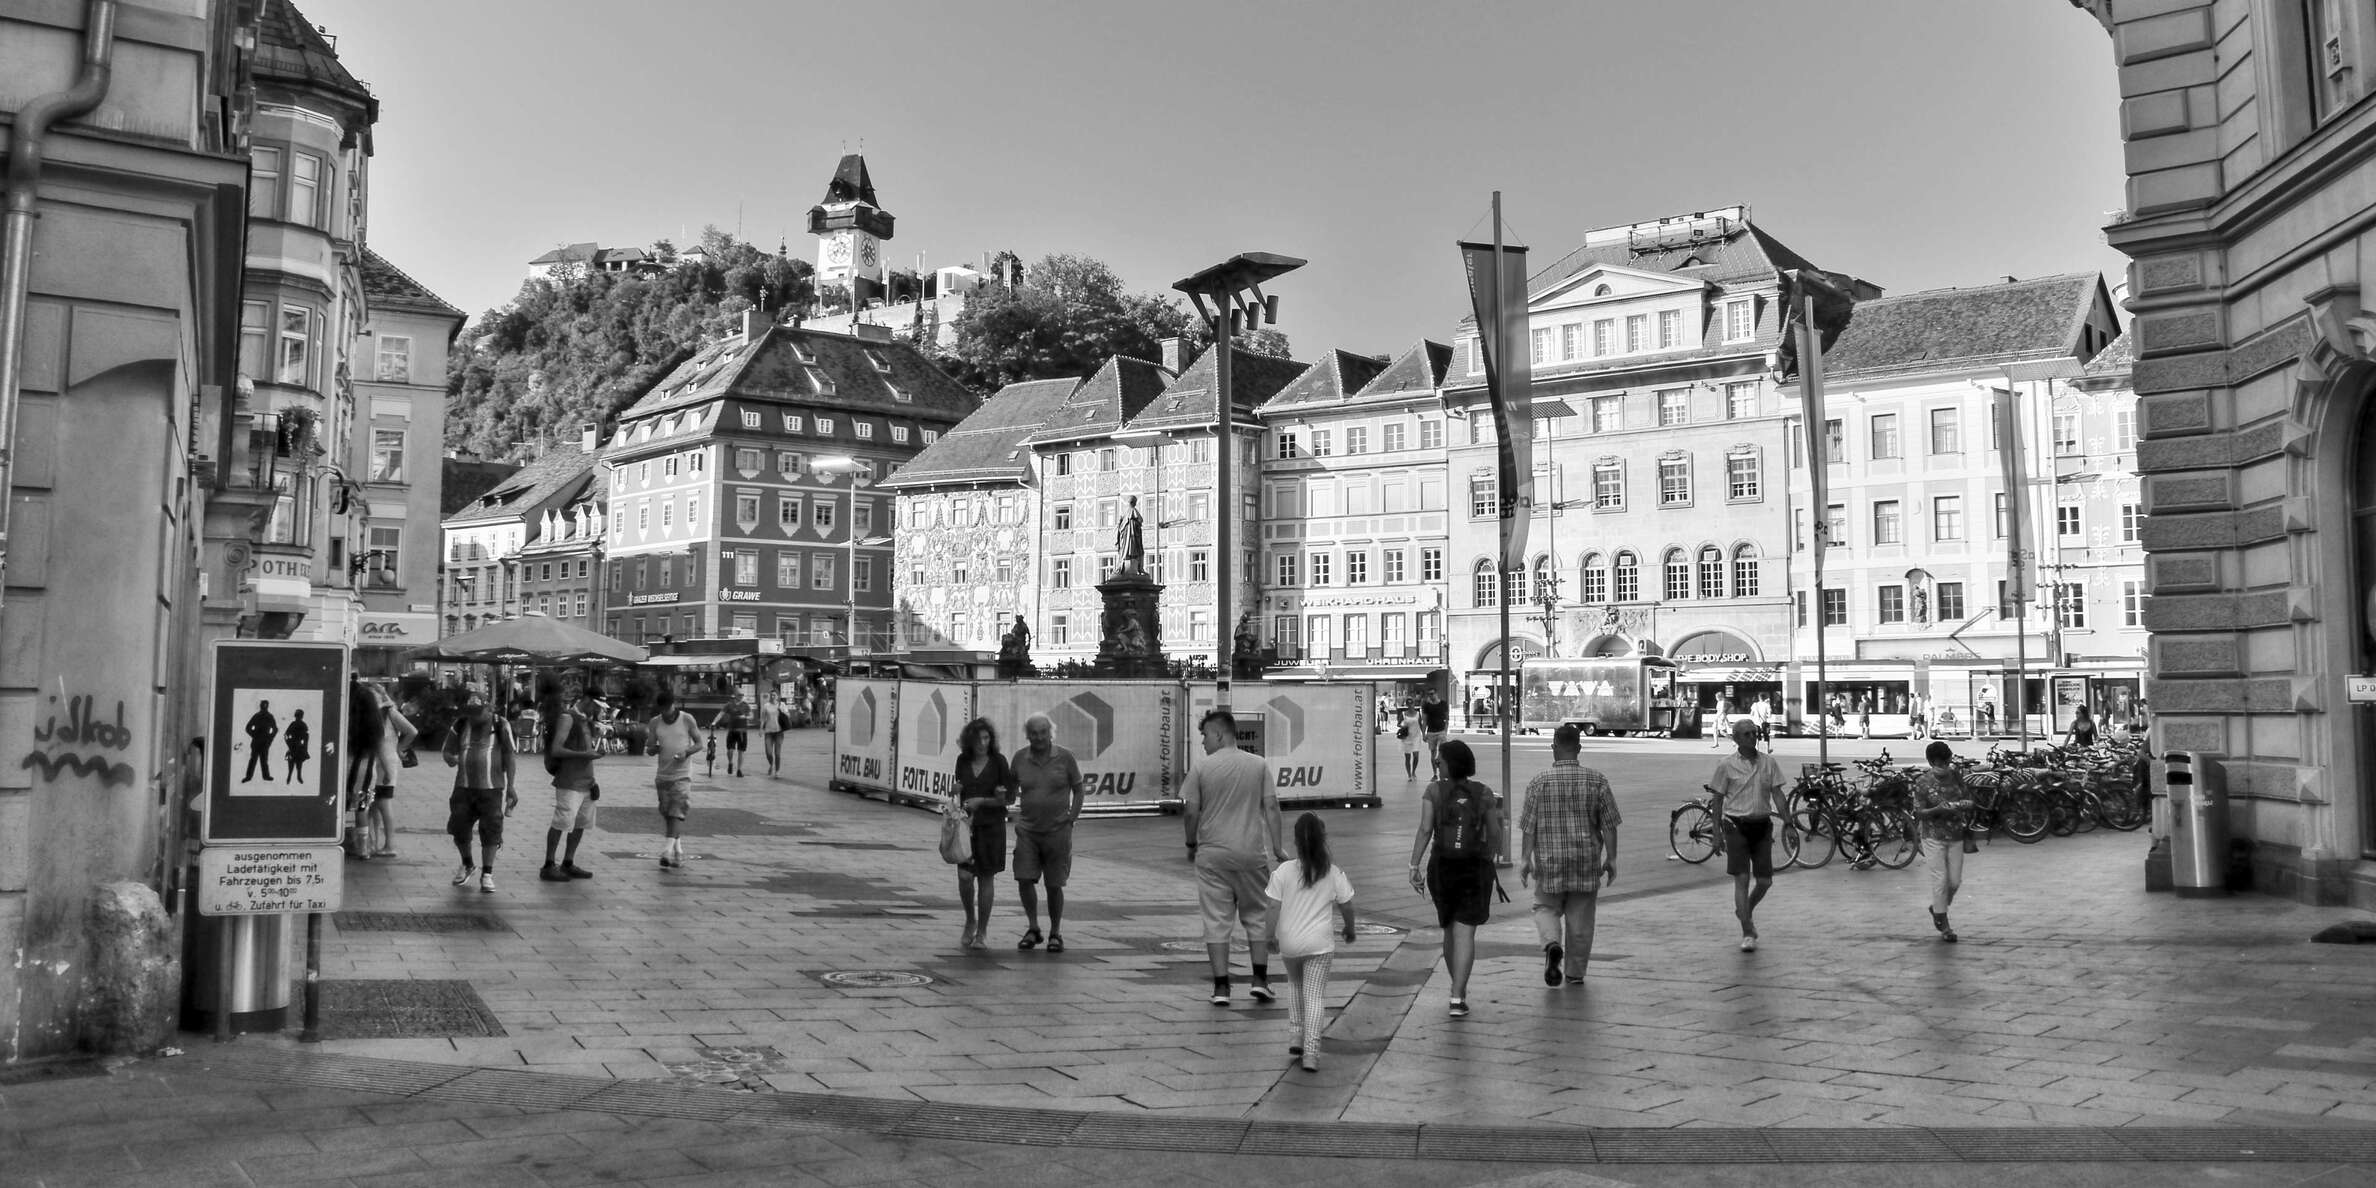 Graz | Hauptplatz and Schloßberg